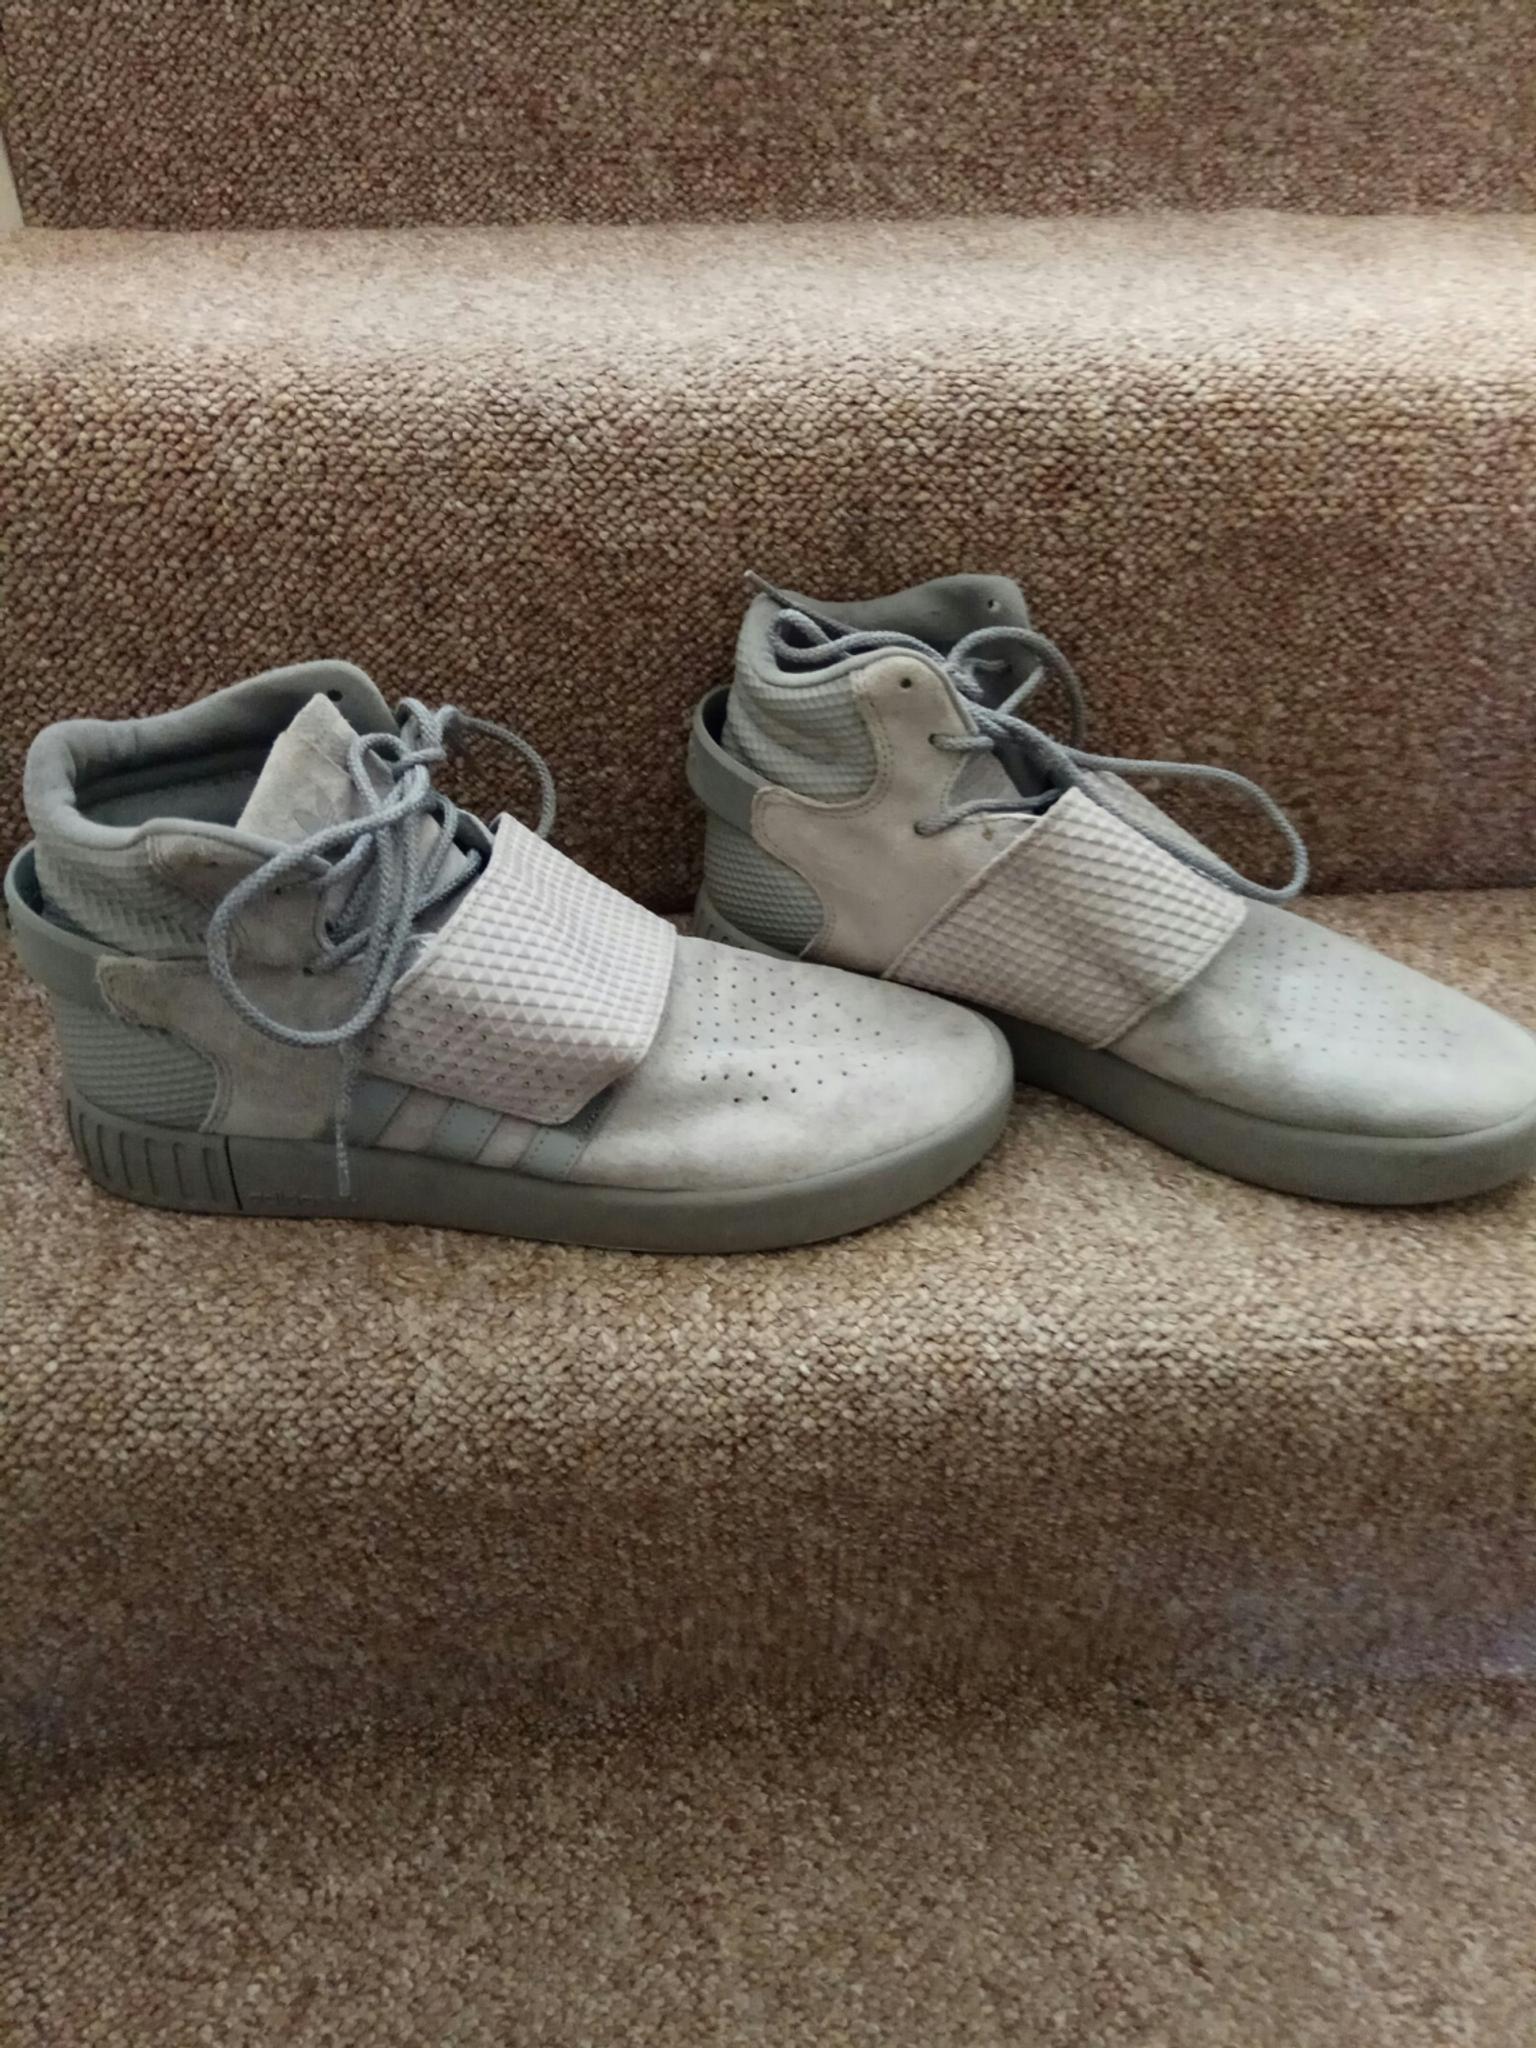 adidas mens shoes sale uk